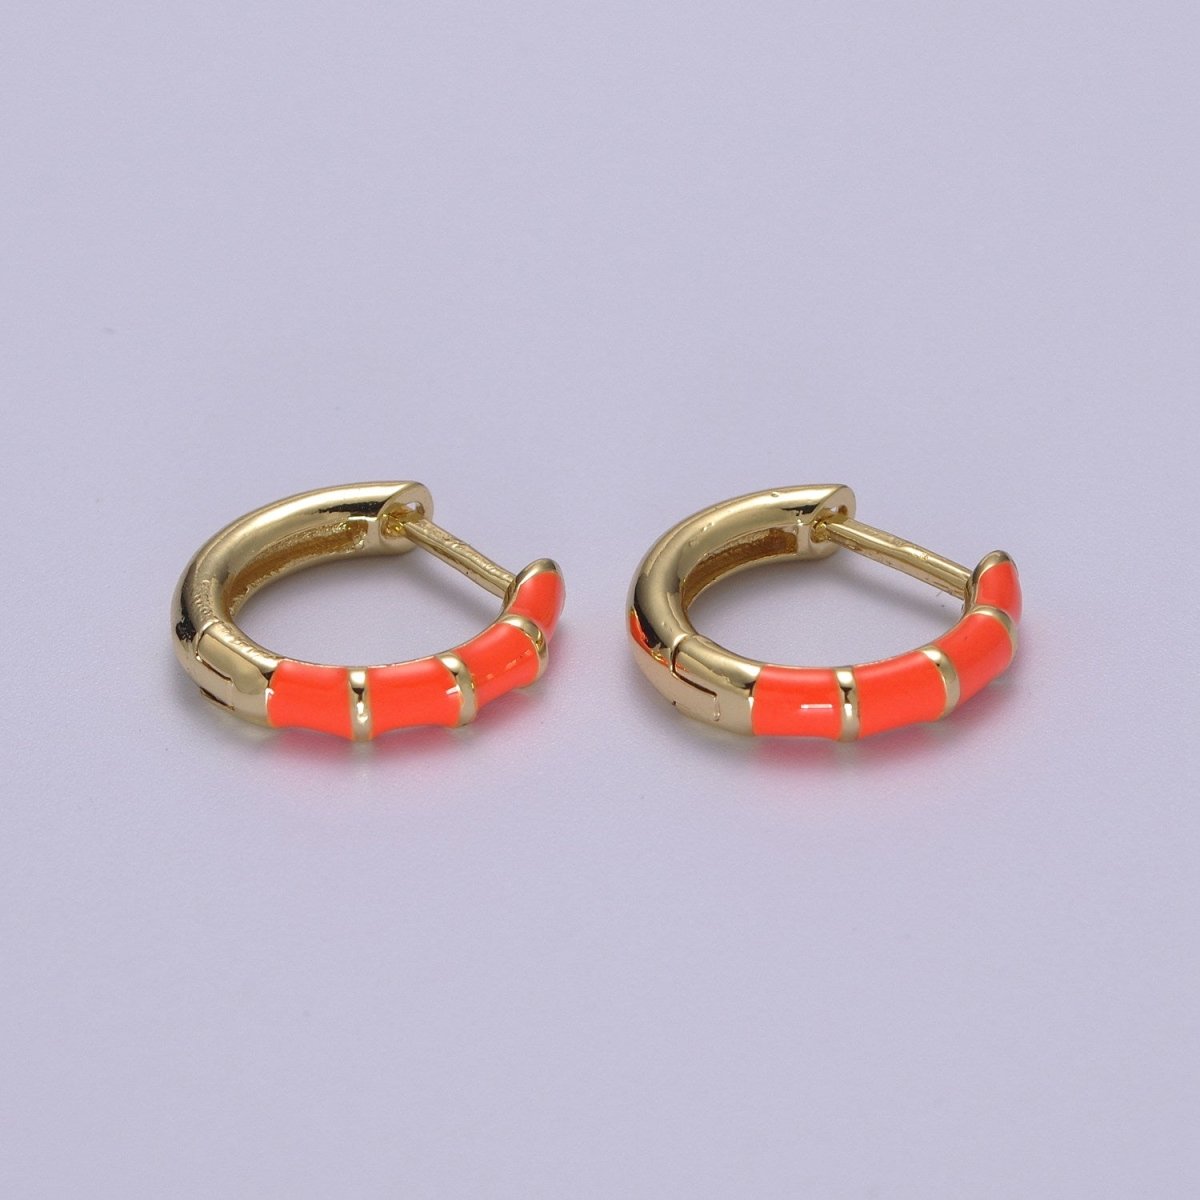 Dainty Huggie Earring Colorful Enamel Pastel Color Earring for Everyday wear 15mm earrings T-164 to T-174 - DLUXCA